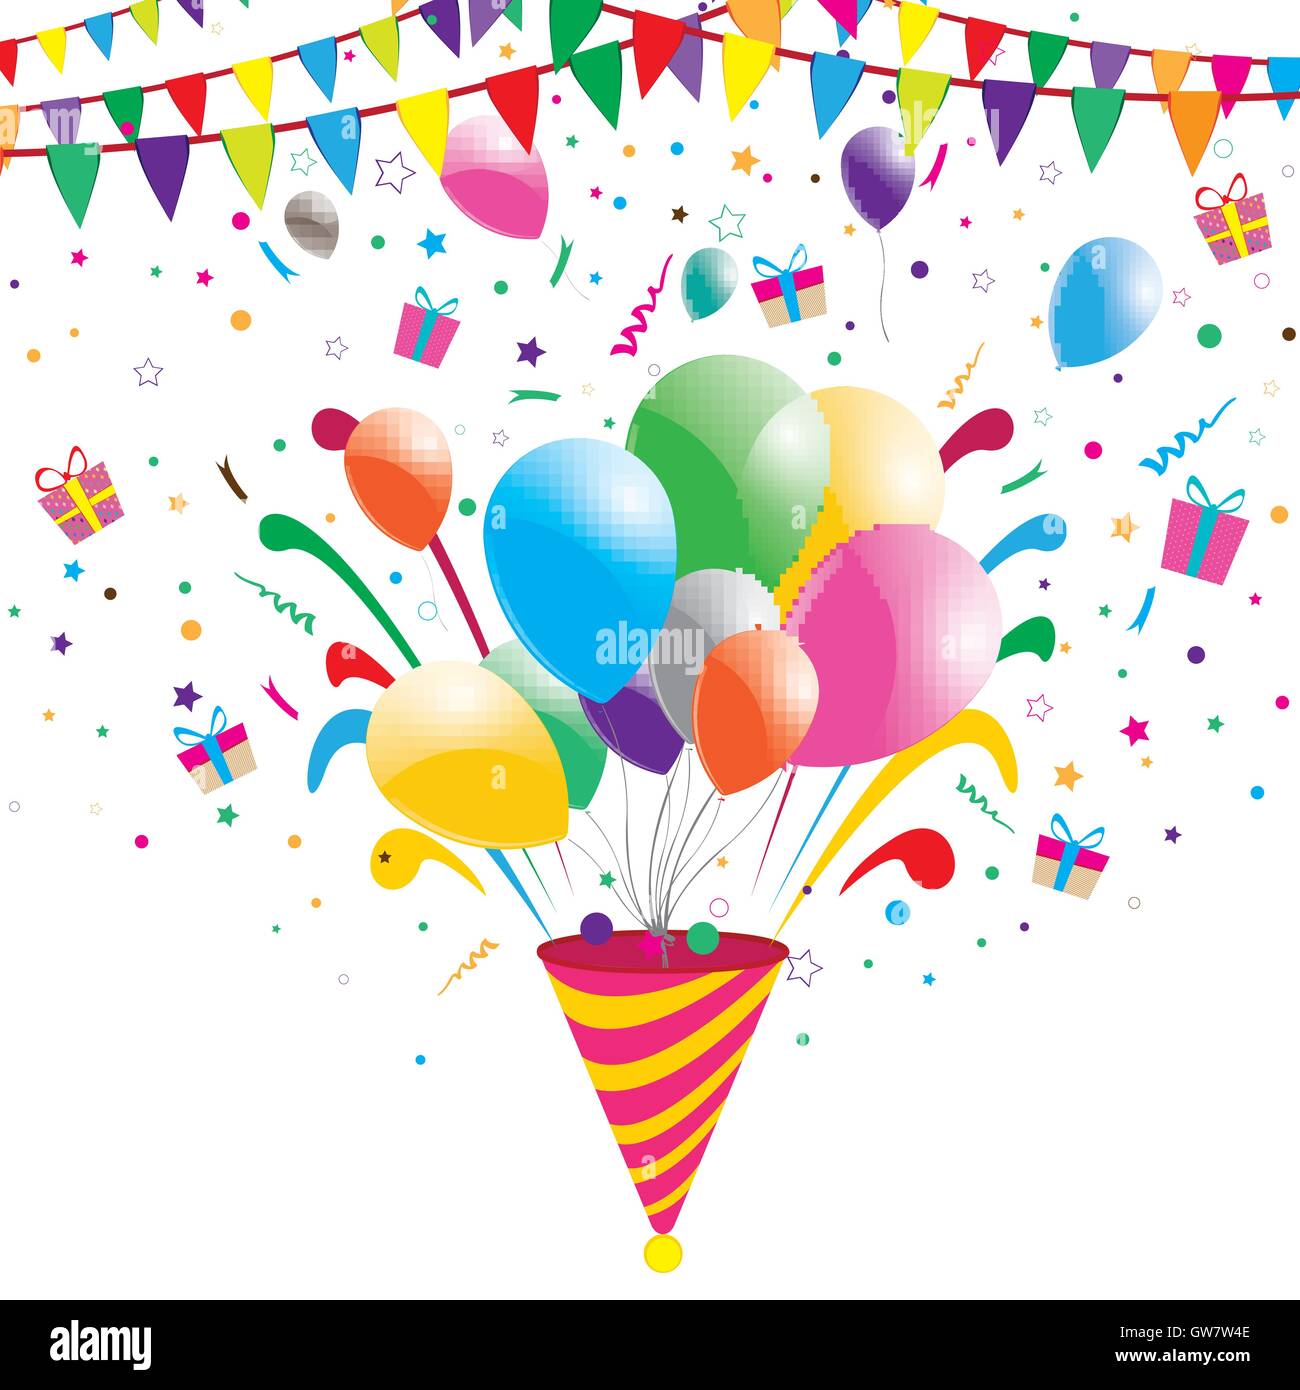 party-confetti-celebration-background-vector-illustration-festival-GW7W4E.jpg